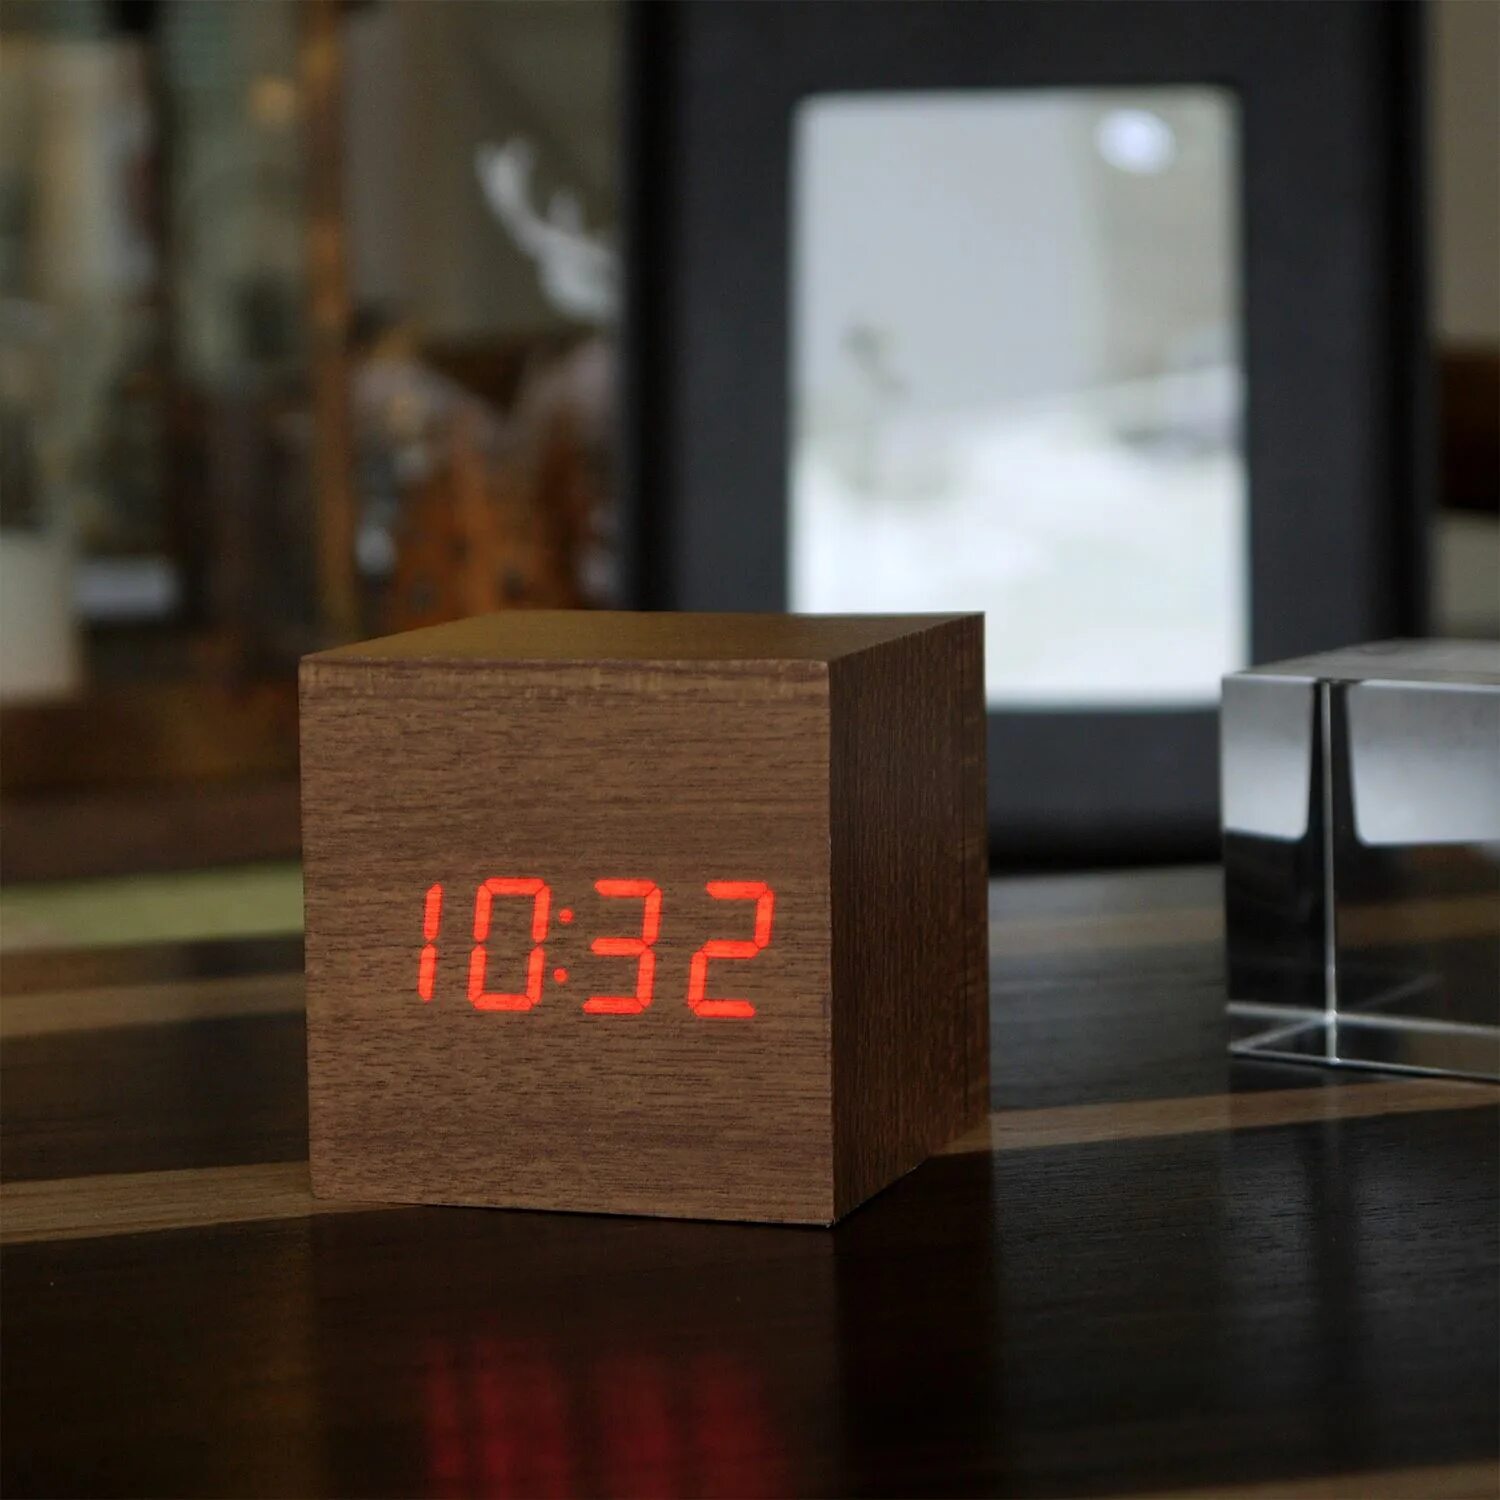 Часы cube. Часы электронные VST-869. Электронные настольные часы-будильник led Wooden Alarm Clock. Настольные часы led Wooden Clock электронные. Электронные часы DS 6612 Wooden Clock.